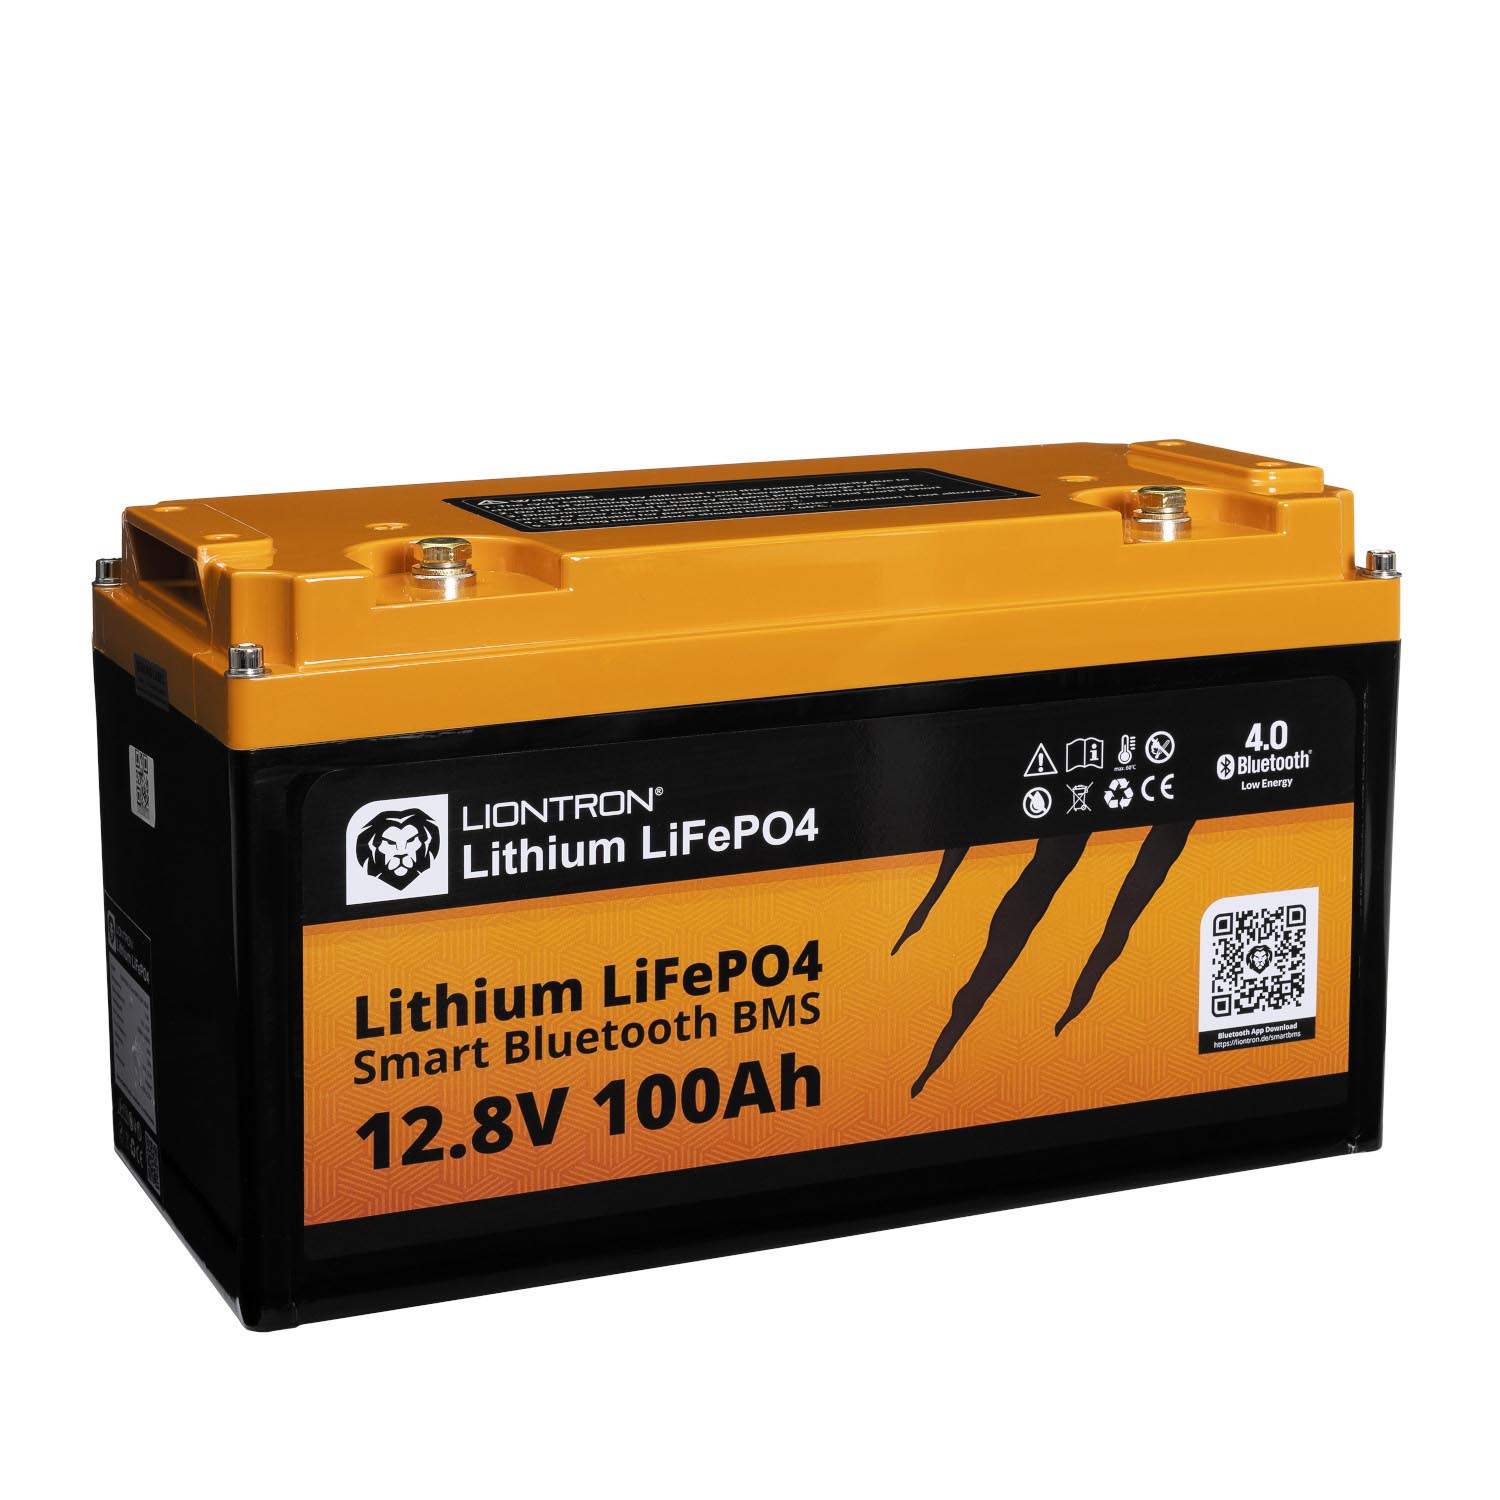 Liontron 100Ah 12V LiFePO4 Lithium Batterie Wohnmobil BMS mit App Arctic